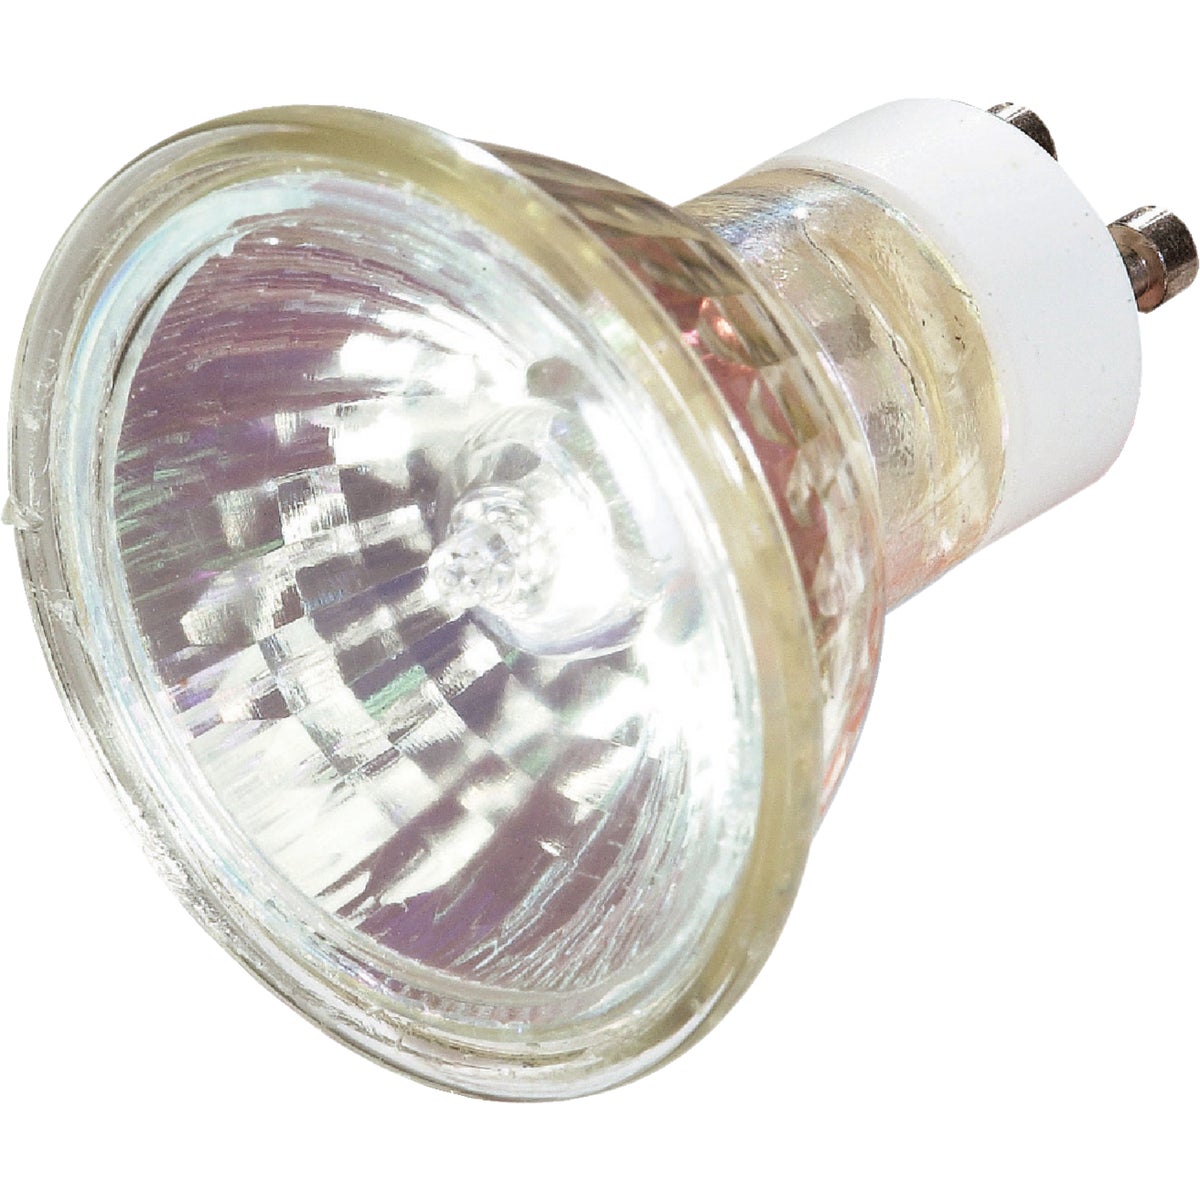 Item 507357, Halogen, clear MR16 floodlight light bulb for whiter, brighter light.